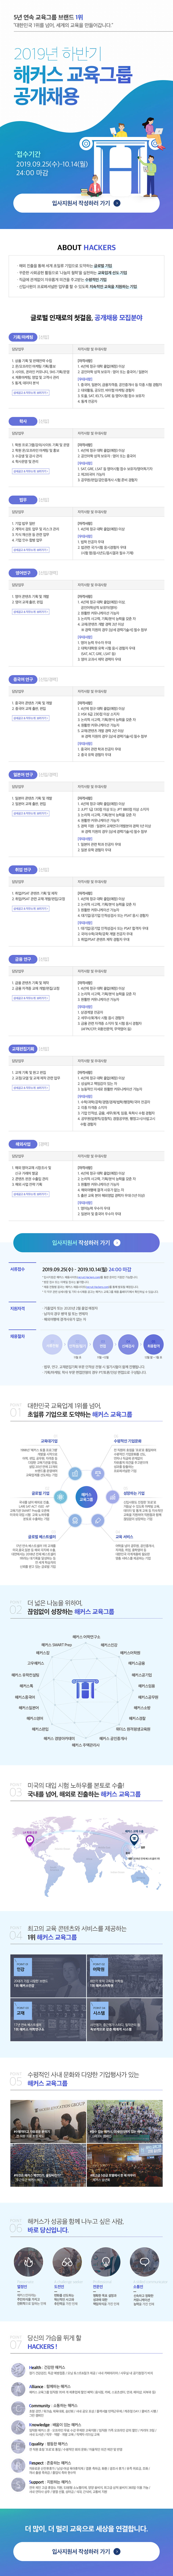 2019년 하반기 해커스 교육그룹 공개채용